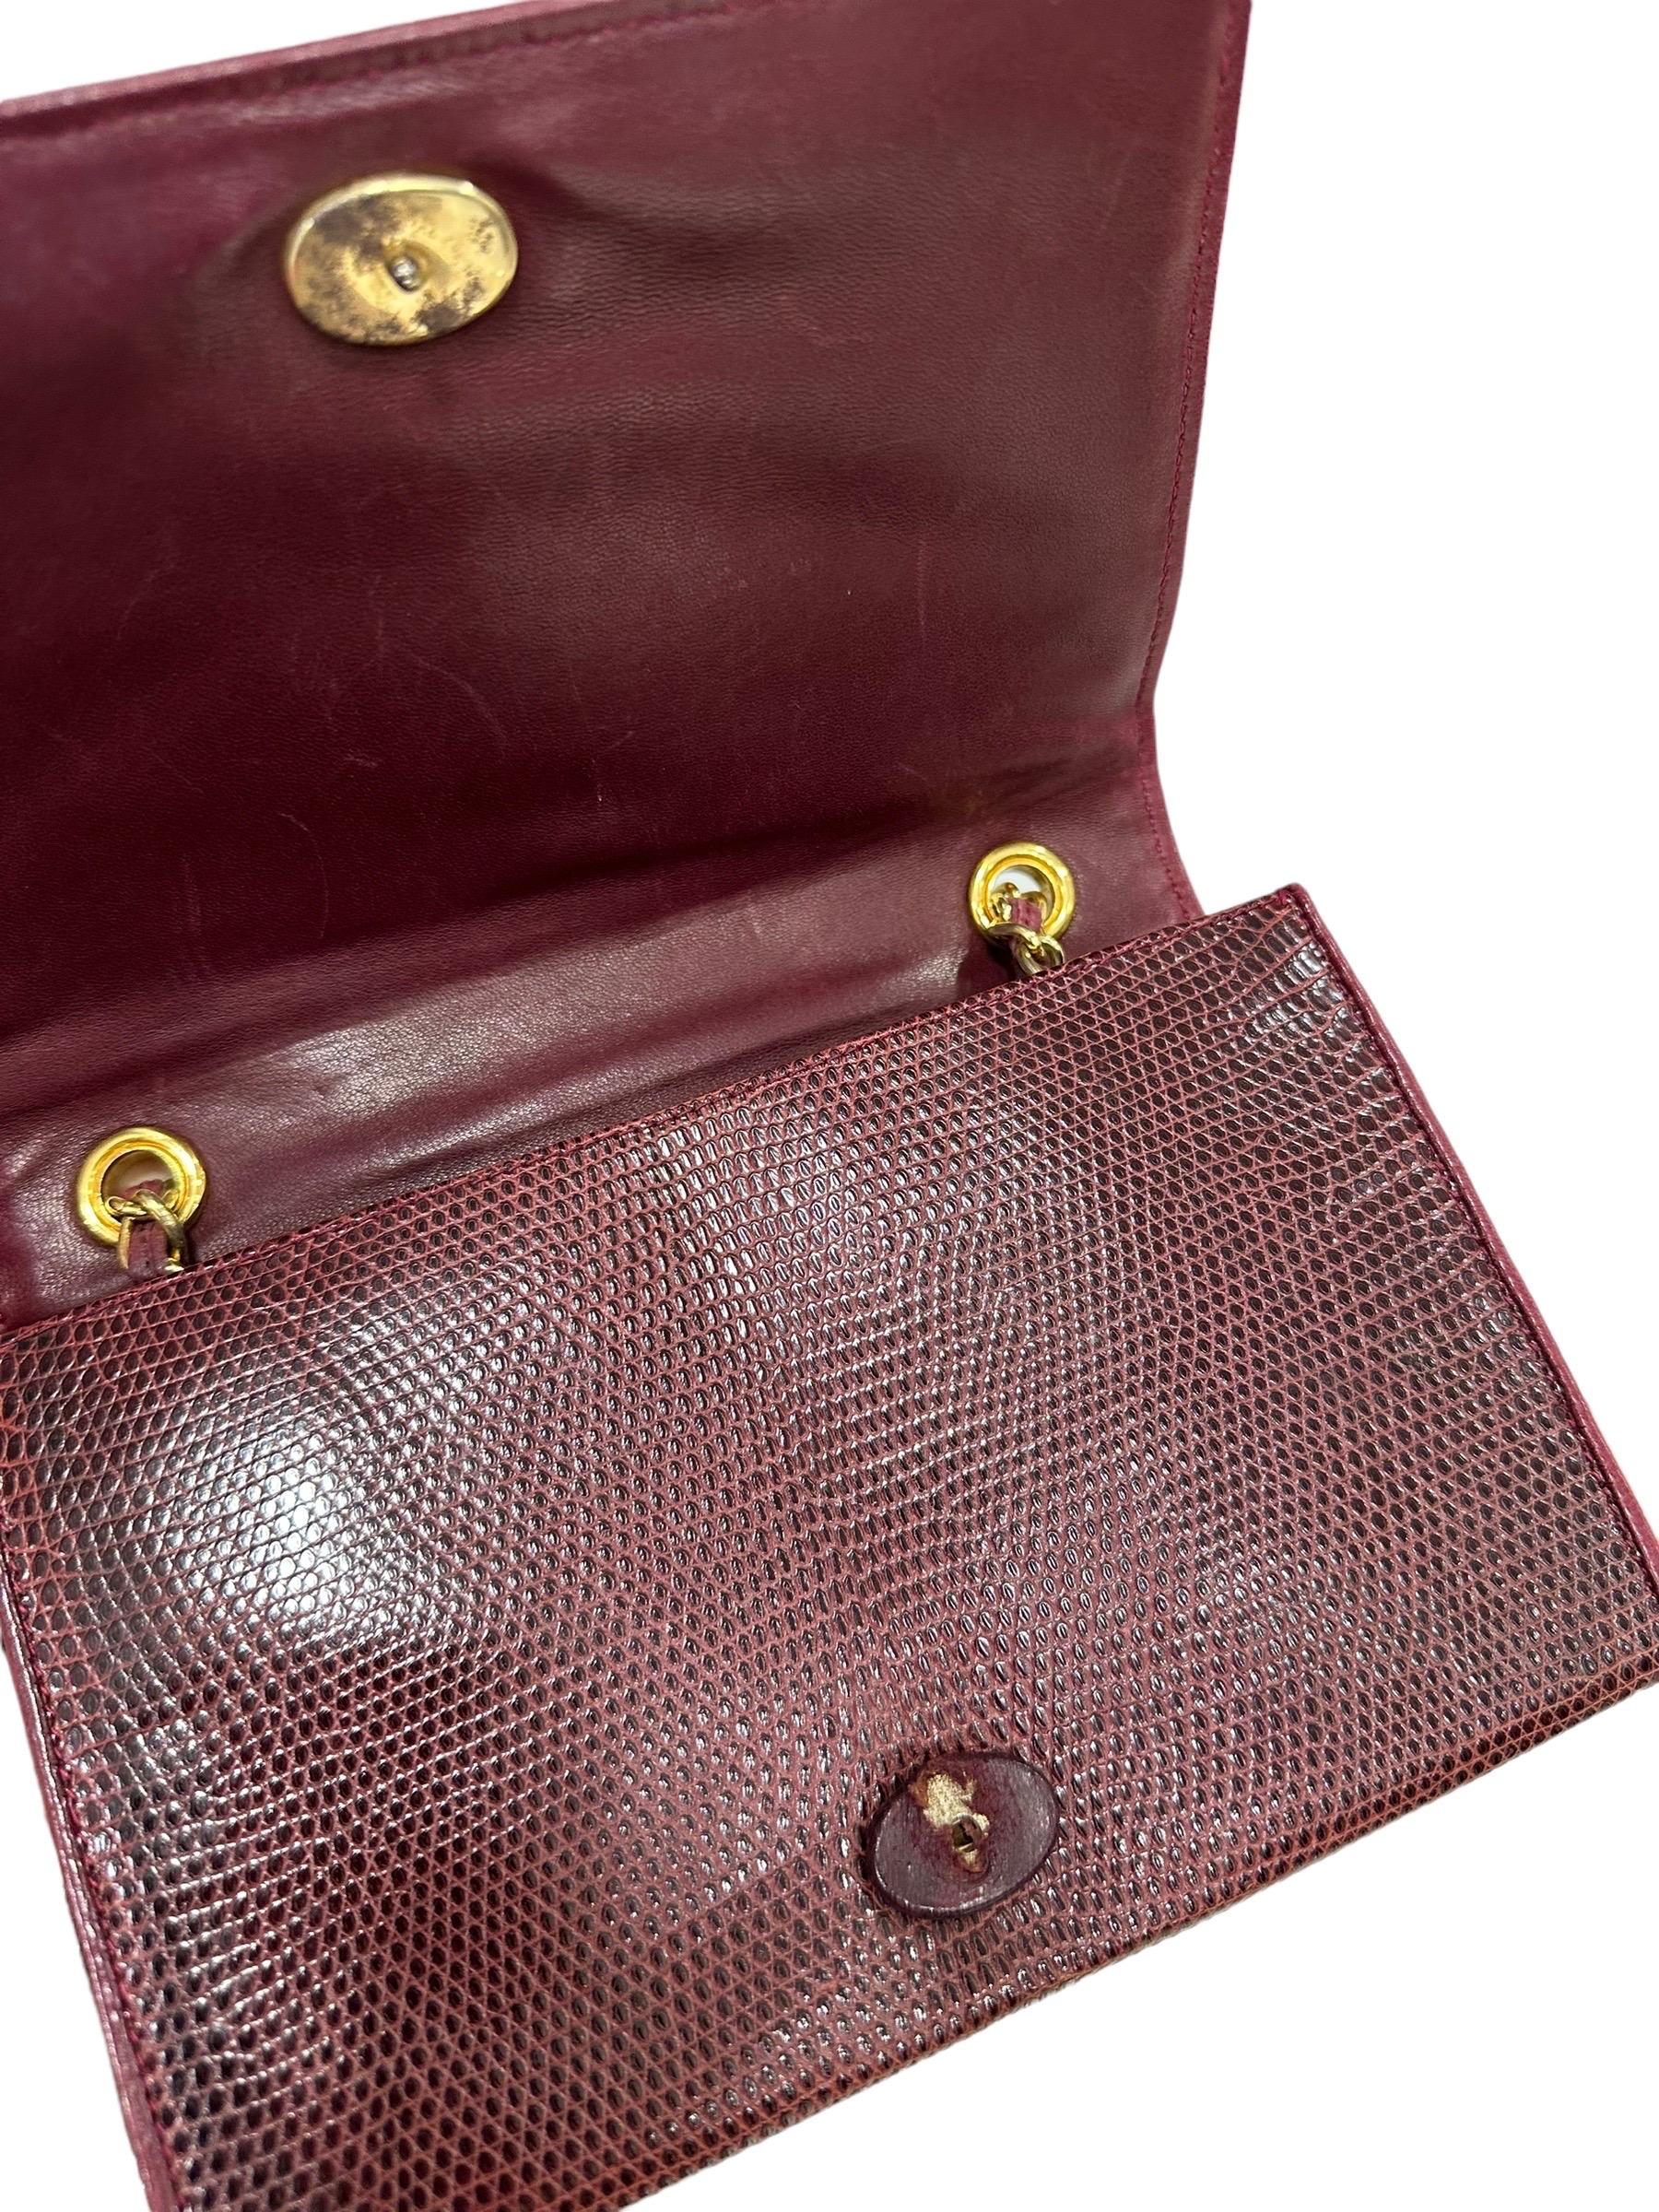 1988 Chanel Bordeaux Leather Shoulder Vintage Bag For Sale 3